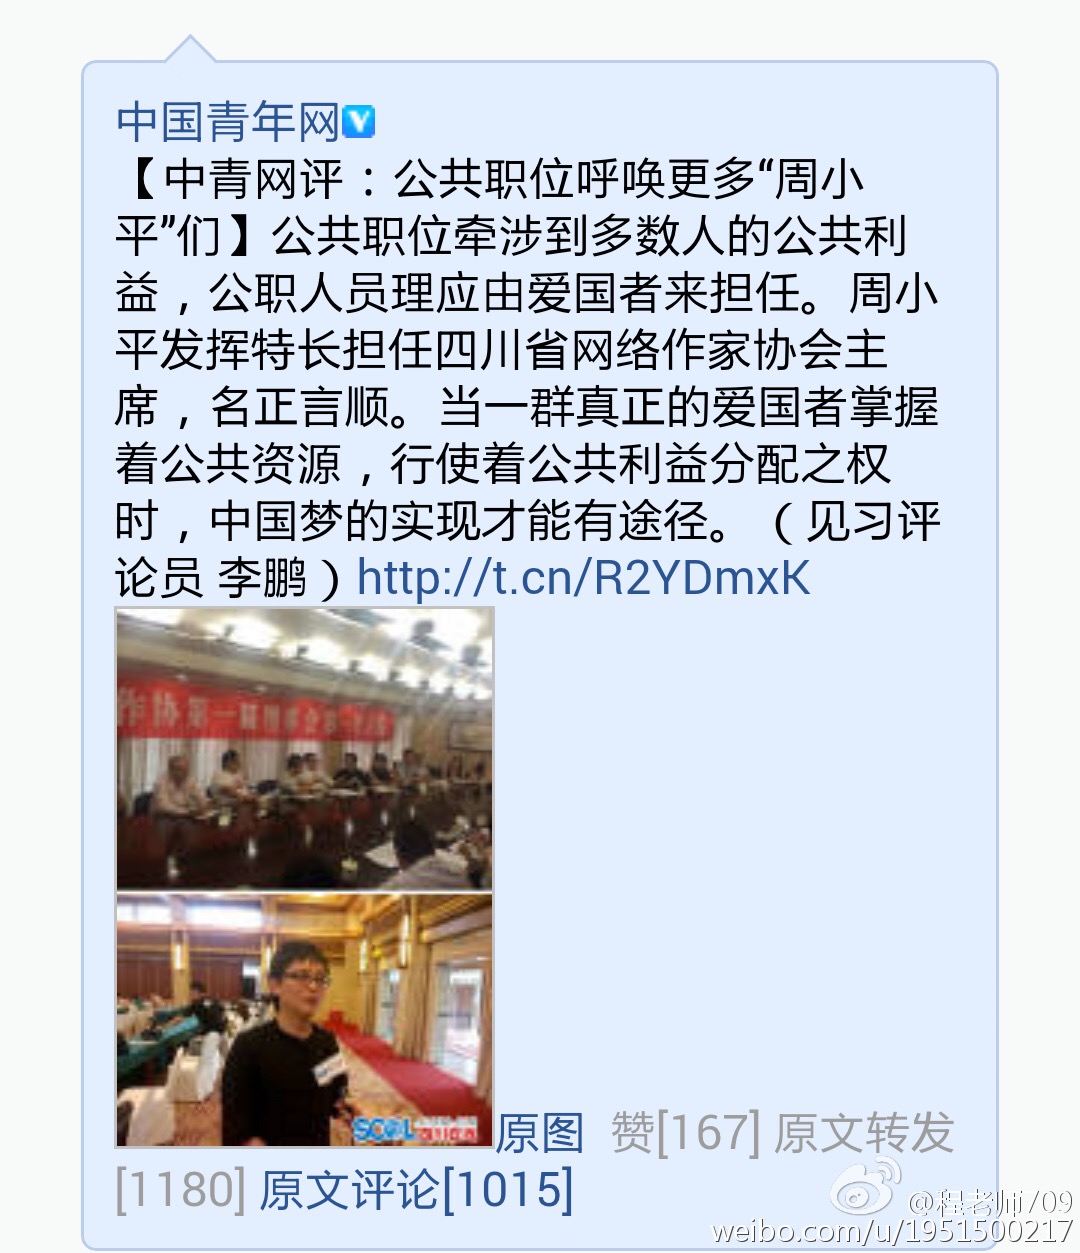 中国青年网呼吁给周小平更大担当